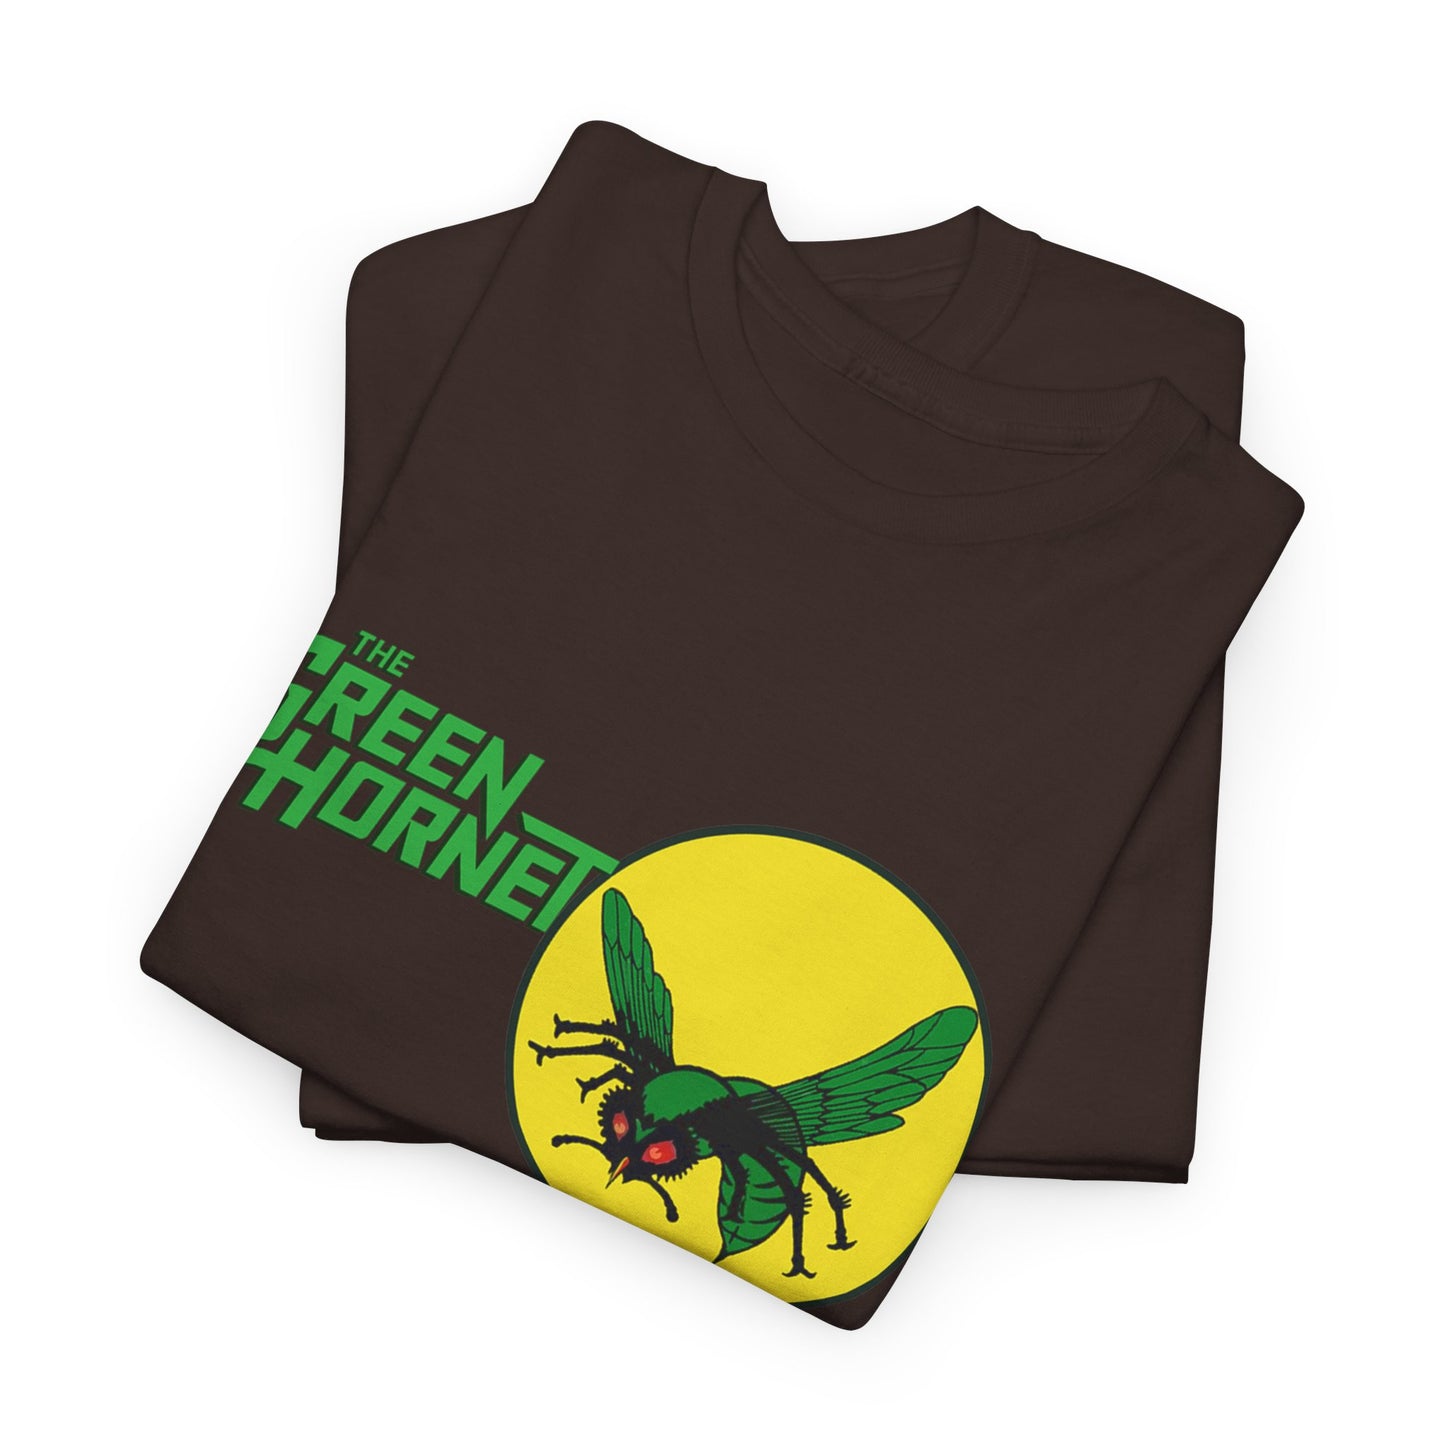 The green hornet